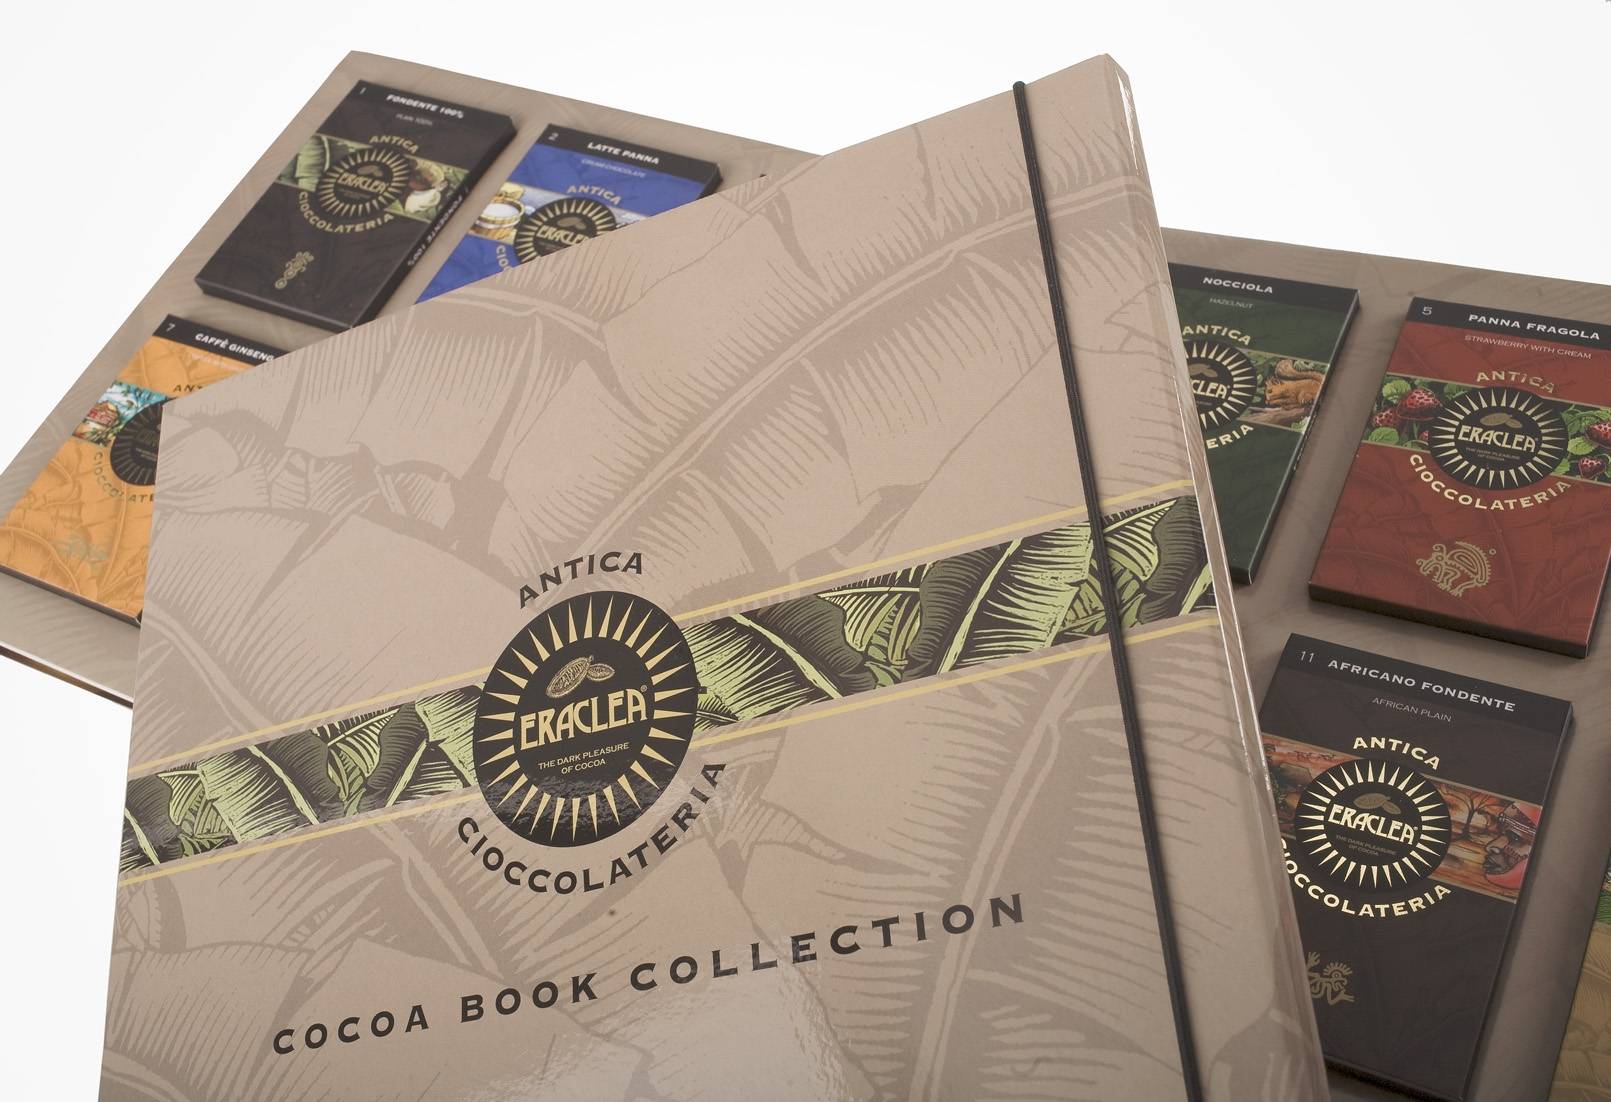 Cocoa book collection 12 tastes